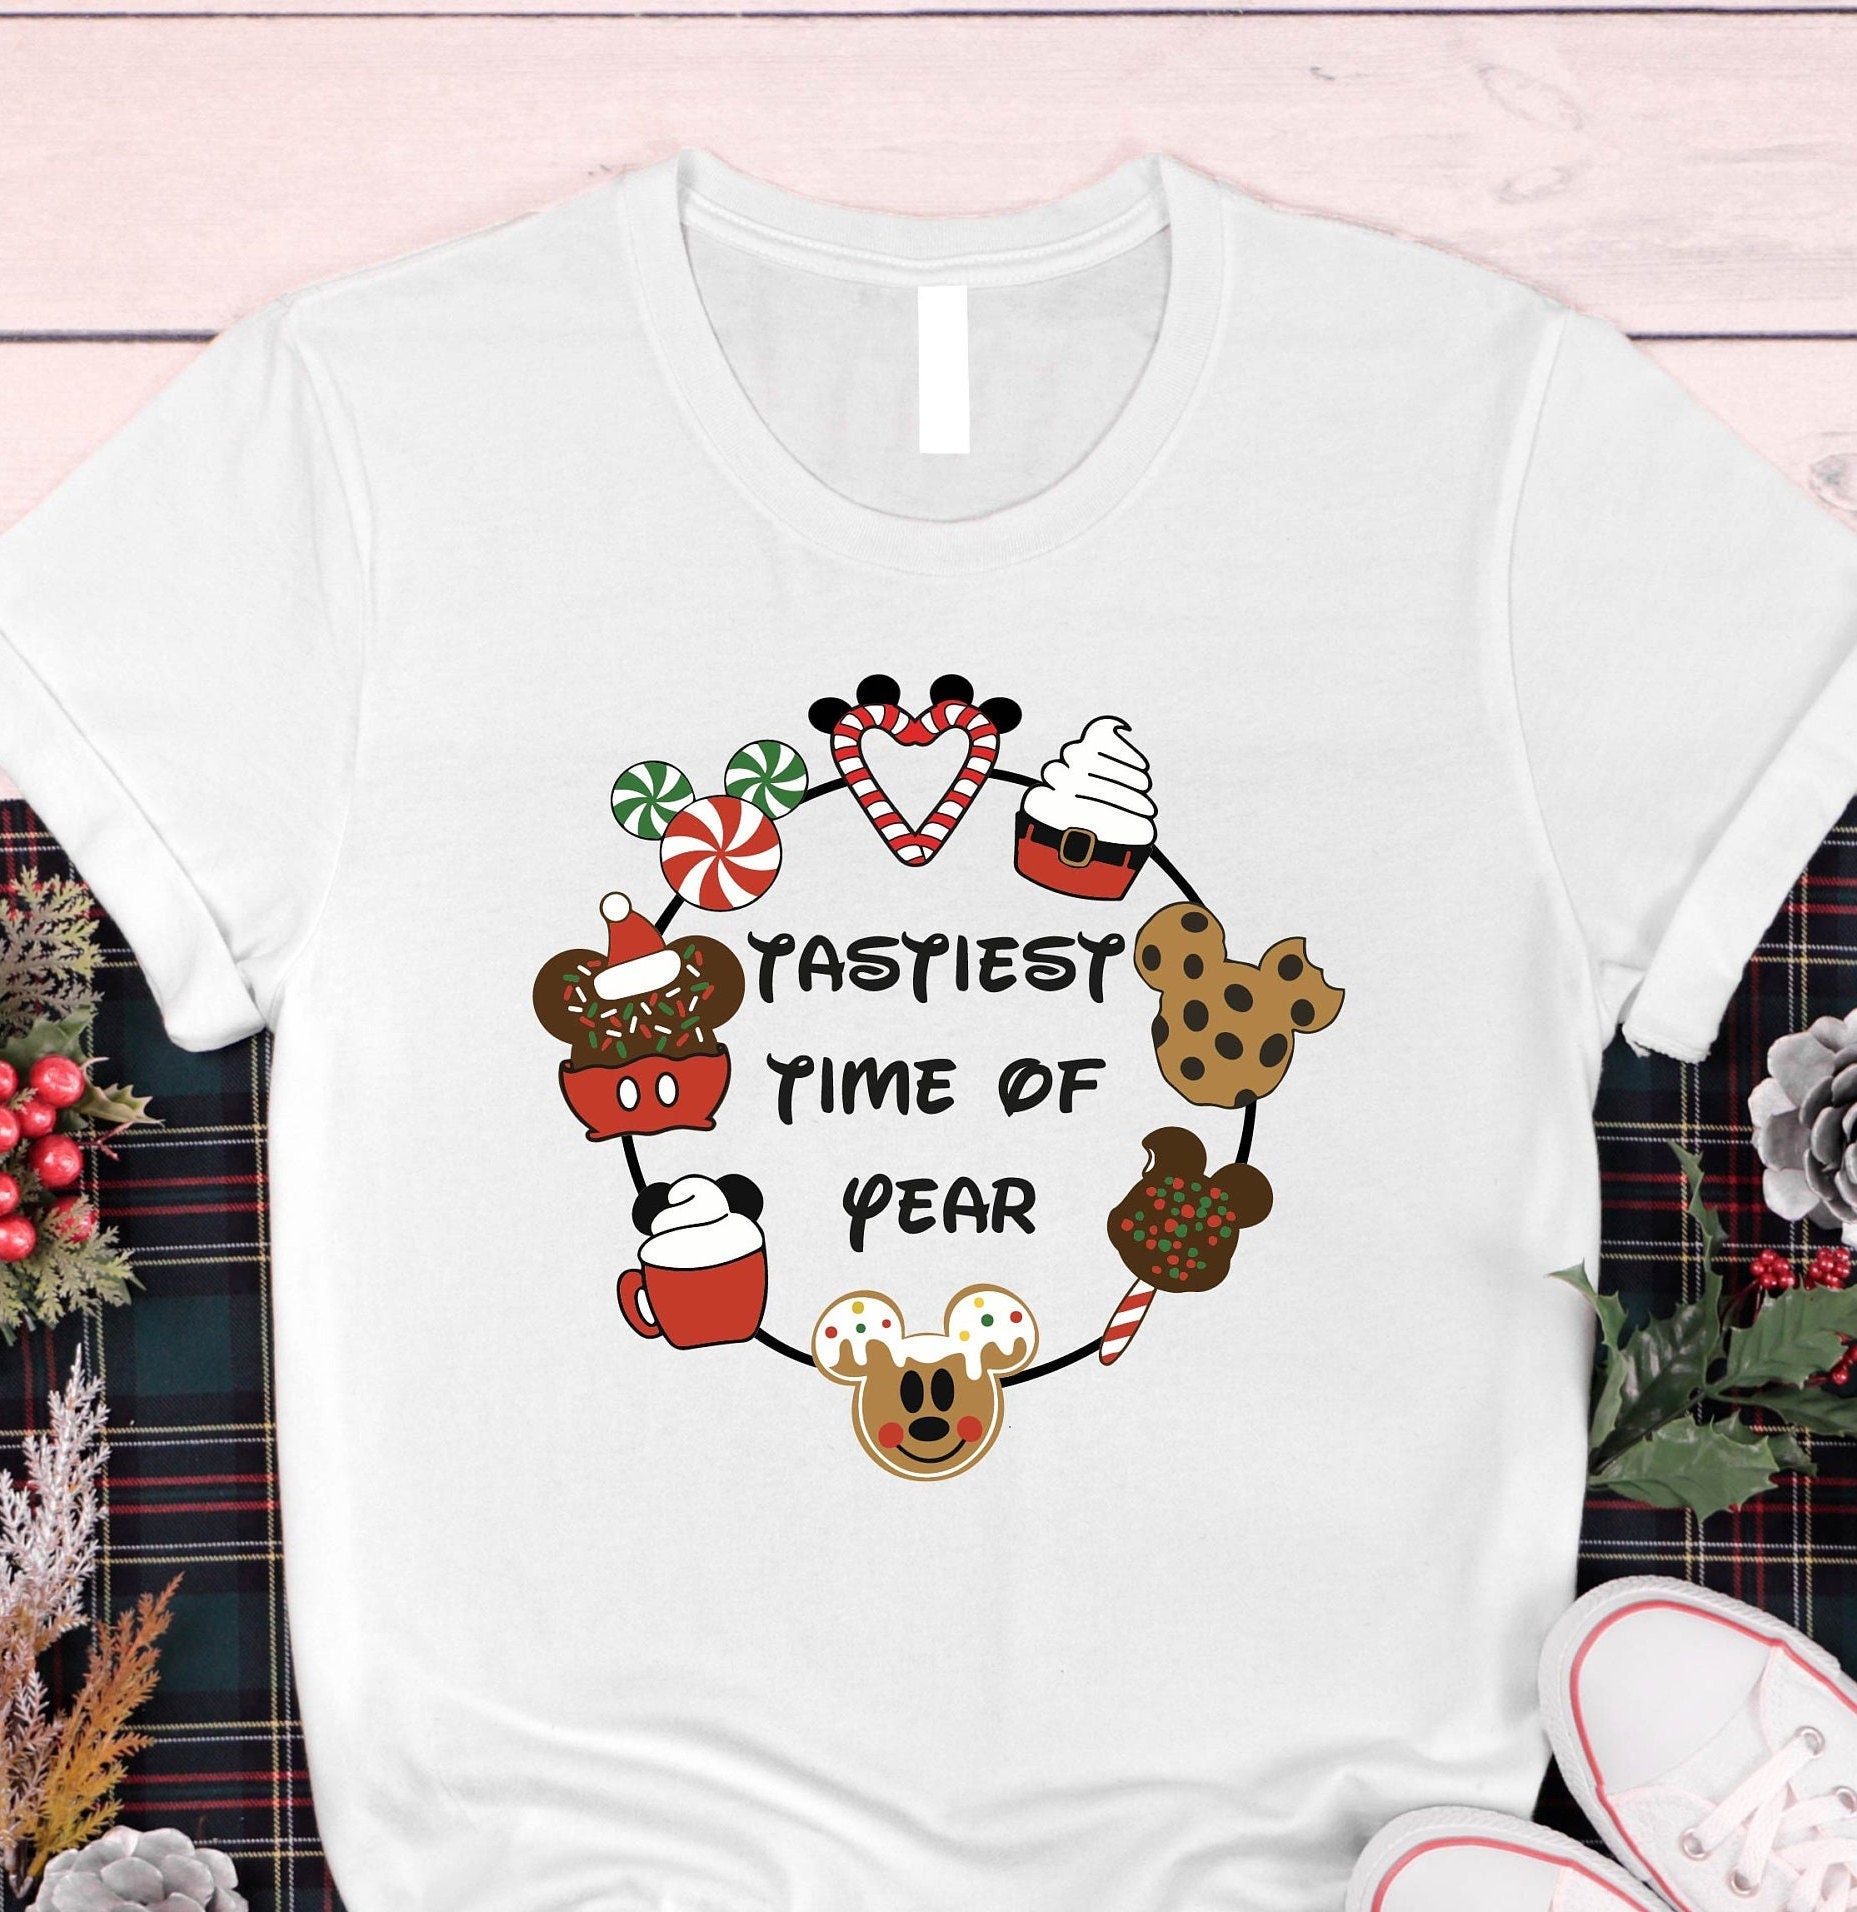 Discover Tastiest Time of The Year Shirt, Disney Christmas Snacks Tee, Holiday Shirt, Christmas Matching Shirt, Gift for Christmas, Family Christmas